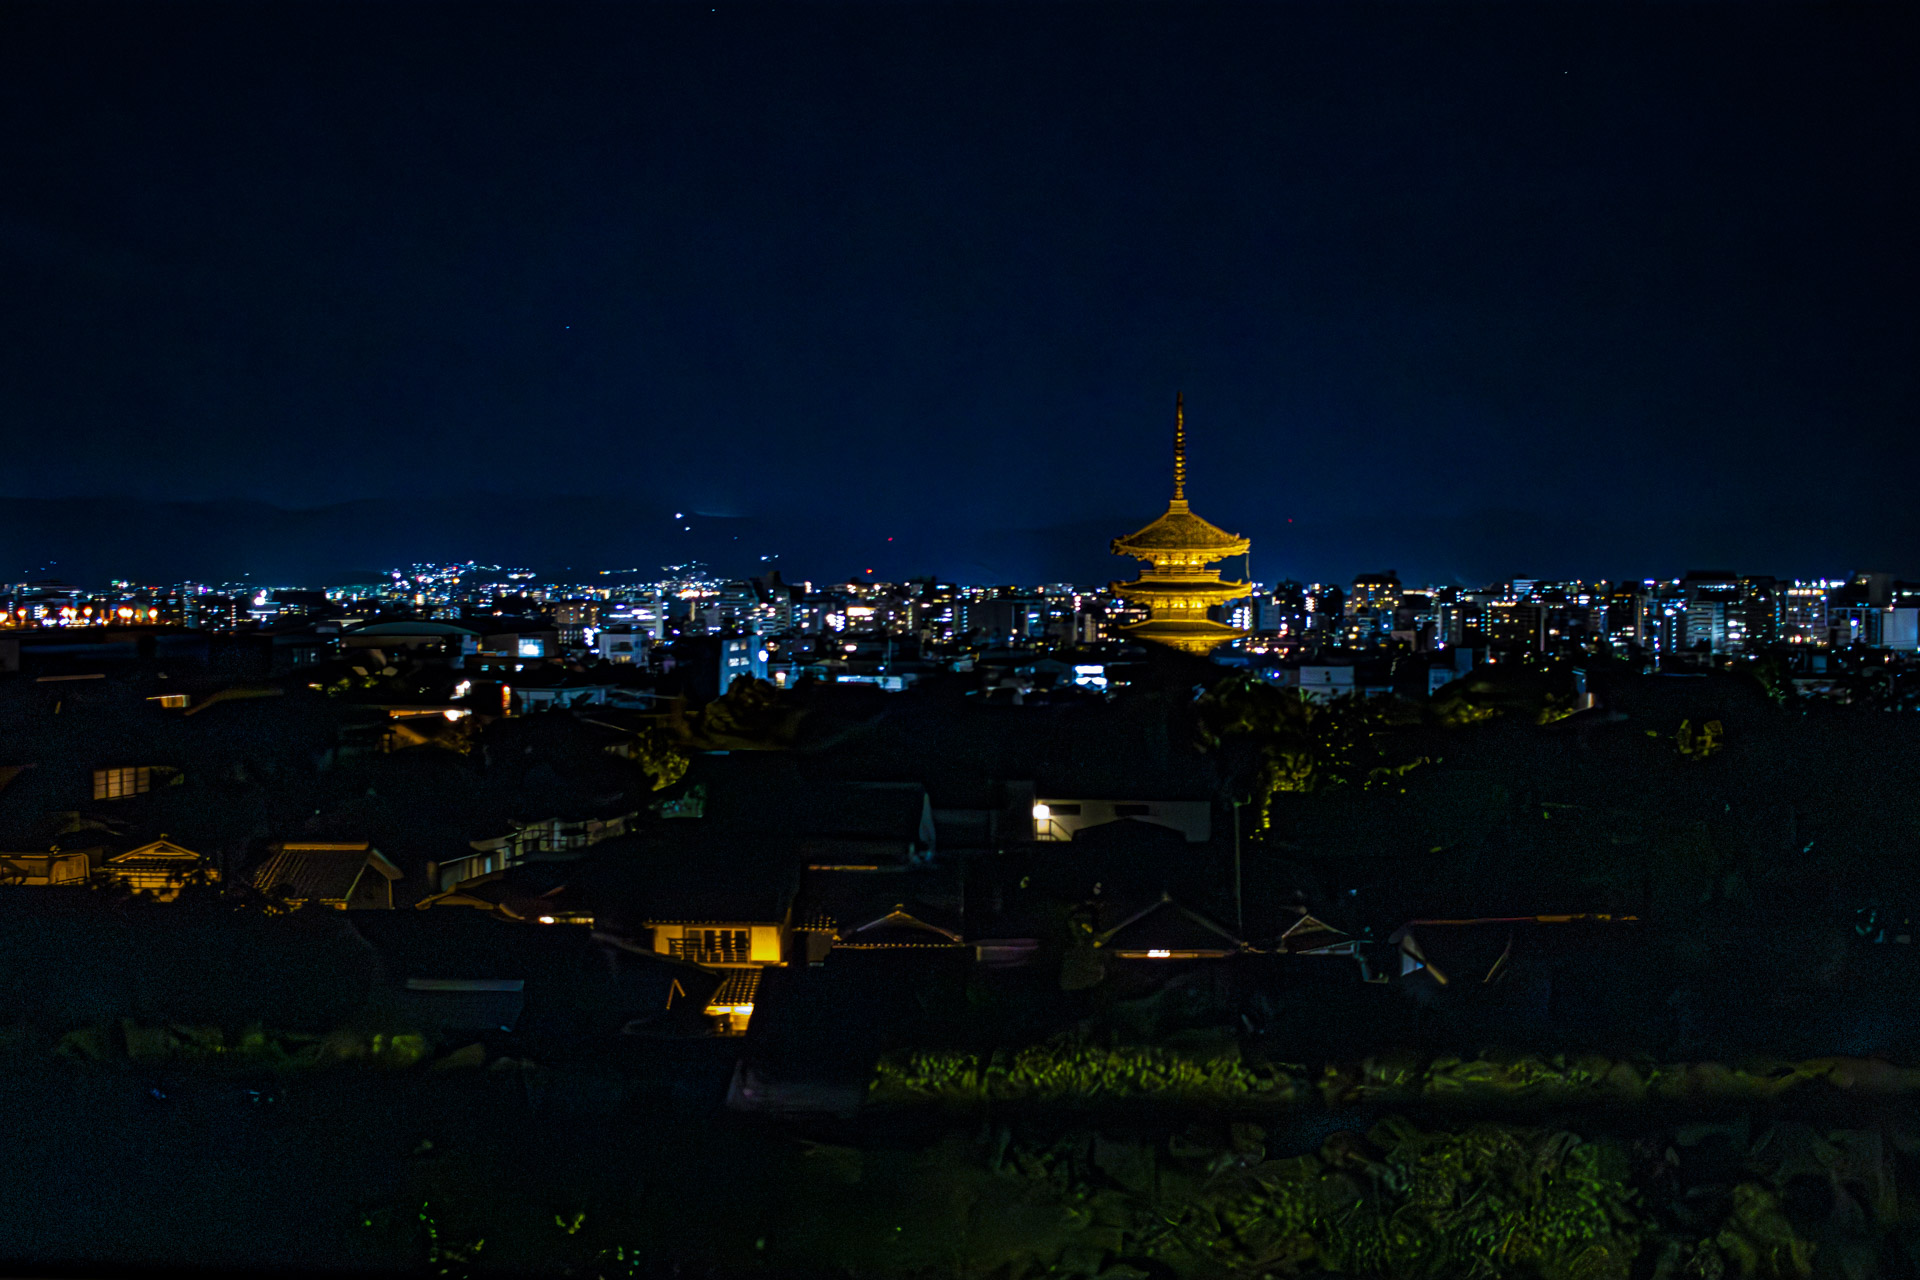 高台寺桝屋町から法観寺五重塔（八坂の塔）と京都市内の夜景